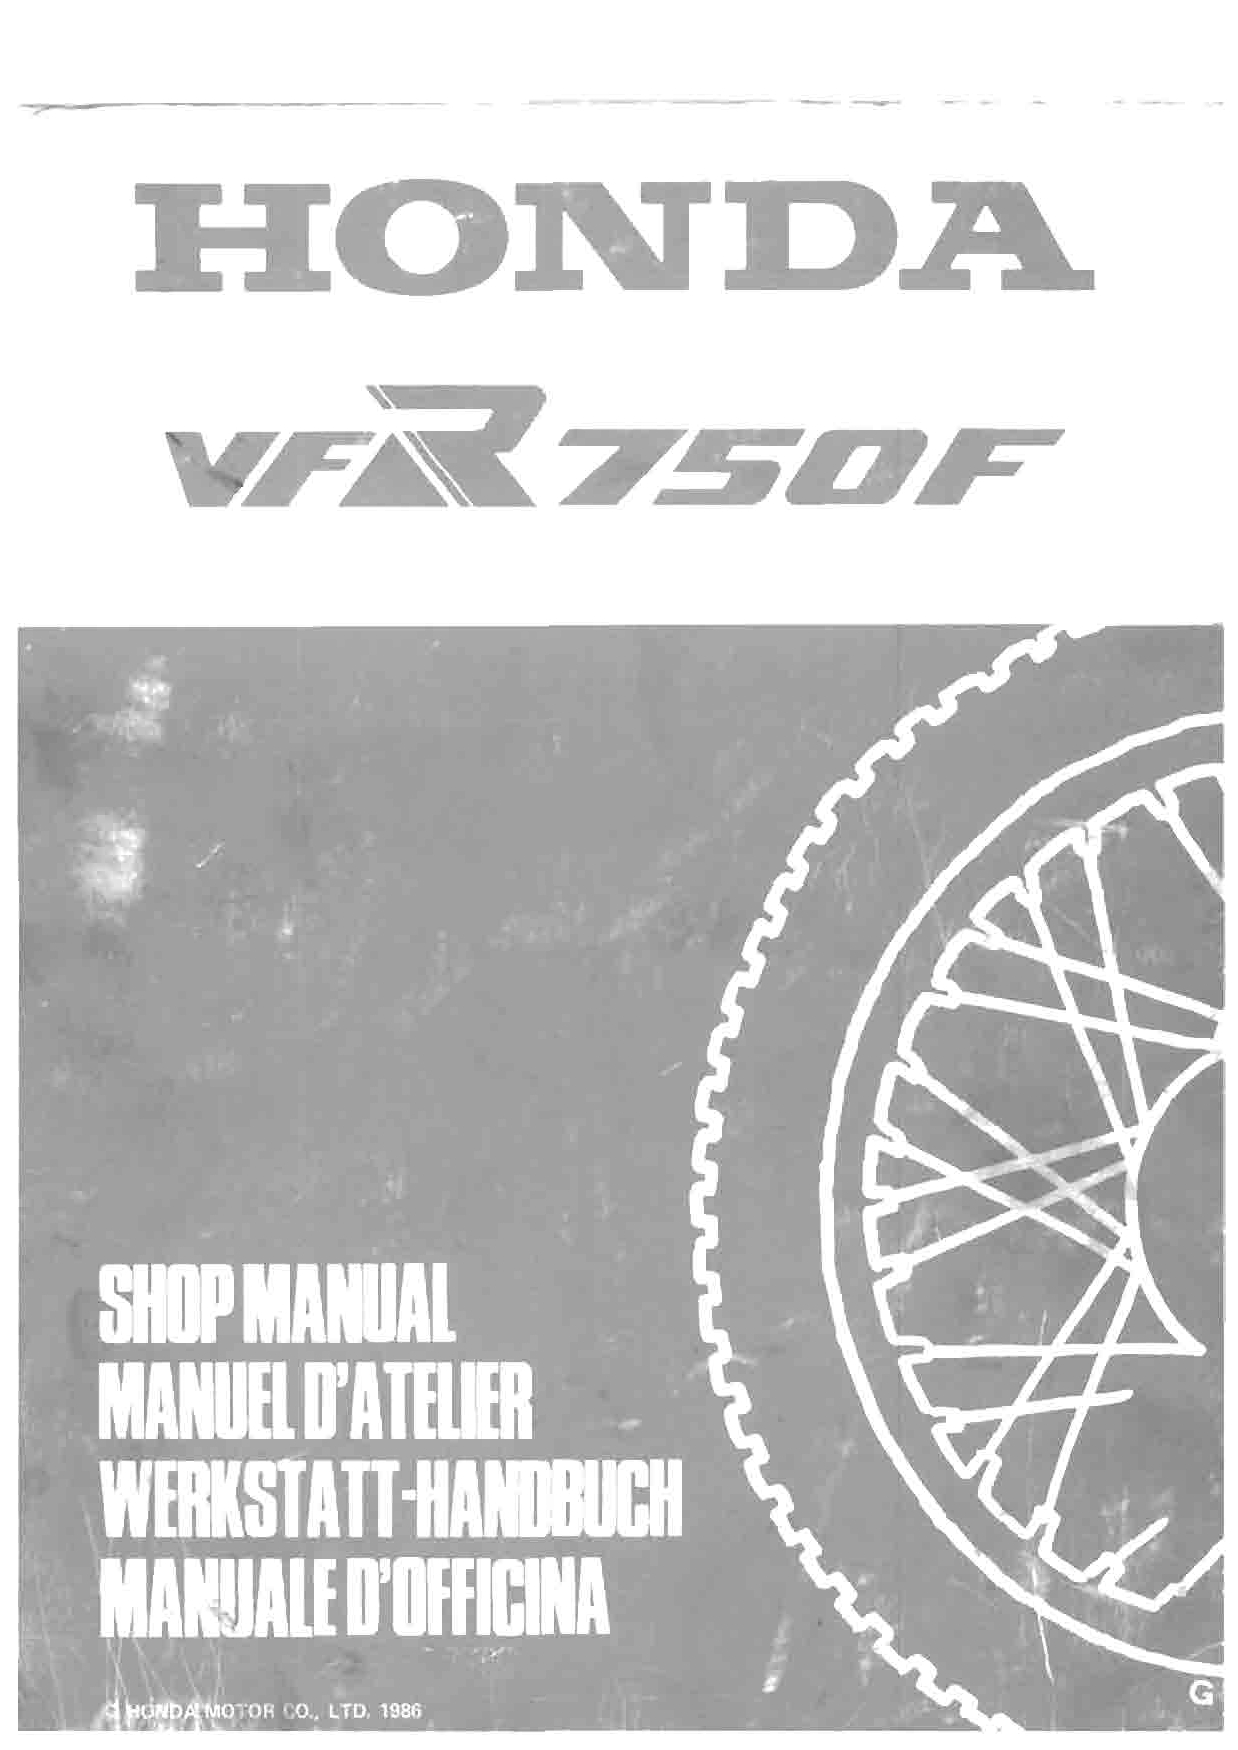 duralast 750 manual pdf